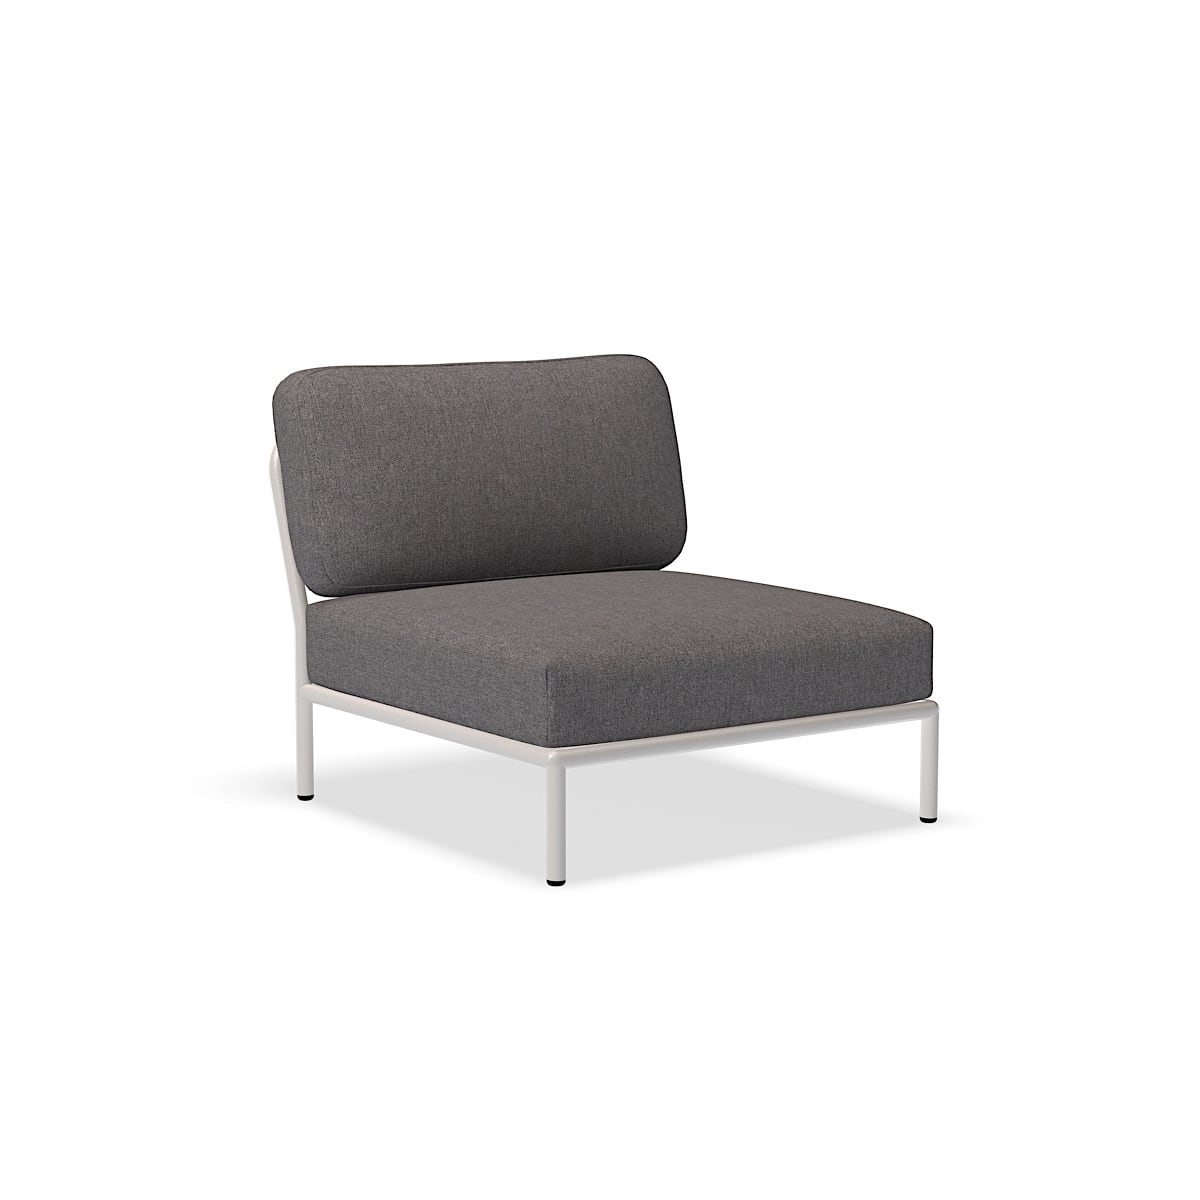 الكرسي - 12205-6443 - كرسي ، لائحة (HERITAGE) ، هيكل أبيض